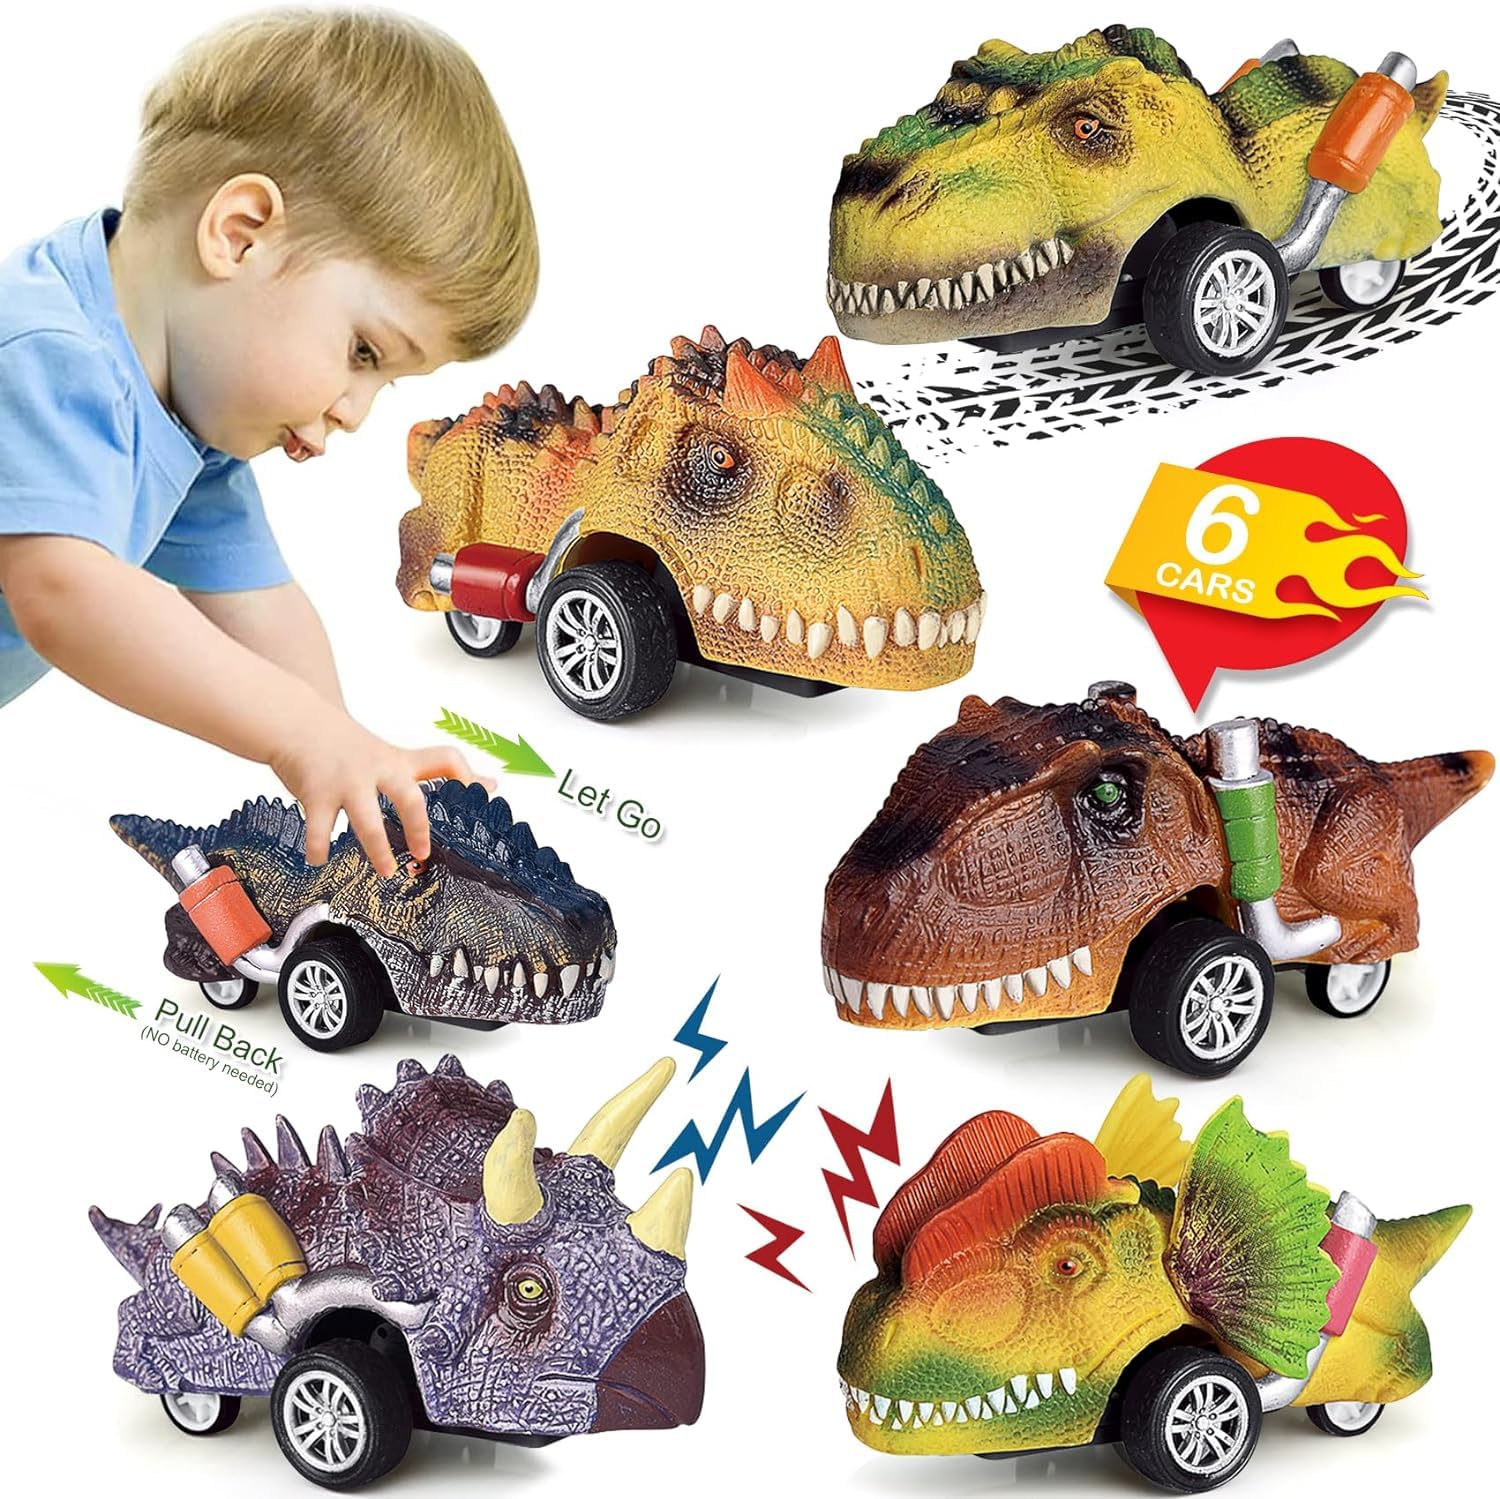 【プルバックカー】プルバック式で、前後に何回か往復させて手を離すと走行します.6種類な恐竜は友達とままごと遊びをすることができます。恐竜や動物の役をしながら、コミュニケーション力を向上、想像力up!【子供が喜ぶプレゼント】】恐竜おもちゃは最近子供たちに特に人気があります。恐竜が大好きな子供たちにとって、恐竜パーティーの記念品、パーティーの飾り、誕生日プレゼント、クリスマスプレゼント、恐竜のテーマのパーティーアイテム、その他の子供向けの祝いのギフトに最適です。【知育おもちゃ】 この恐竜のリターンカーで、子どもたちは想像力と創造力を養いながら、さまざまな種類の恐竜について学ぶことができます。6種類の恐竜の車は、子どもたちが恐竜の世界に入り込み、一緒に恐竜ごっこをしながら冒険をすることができ、コミュニケーション能力も向上させることができます。【材質】優れた無毒のABS材質で、耐久性があります.子供が遊んでも壊れないので小さい子供に素晴らしいプレゼントをお薦めします【子供にちょうど良いサイズ】ミニサイズは約13cmです。子供は握り易いです.外出も持ち運びが便利です.